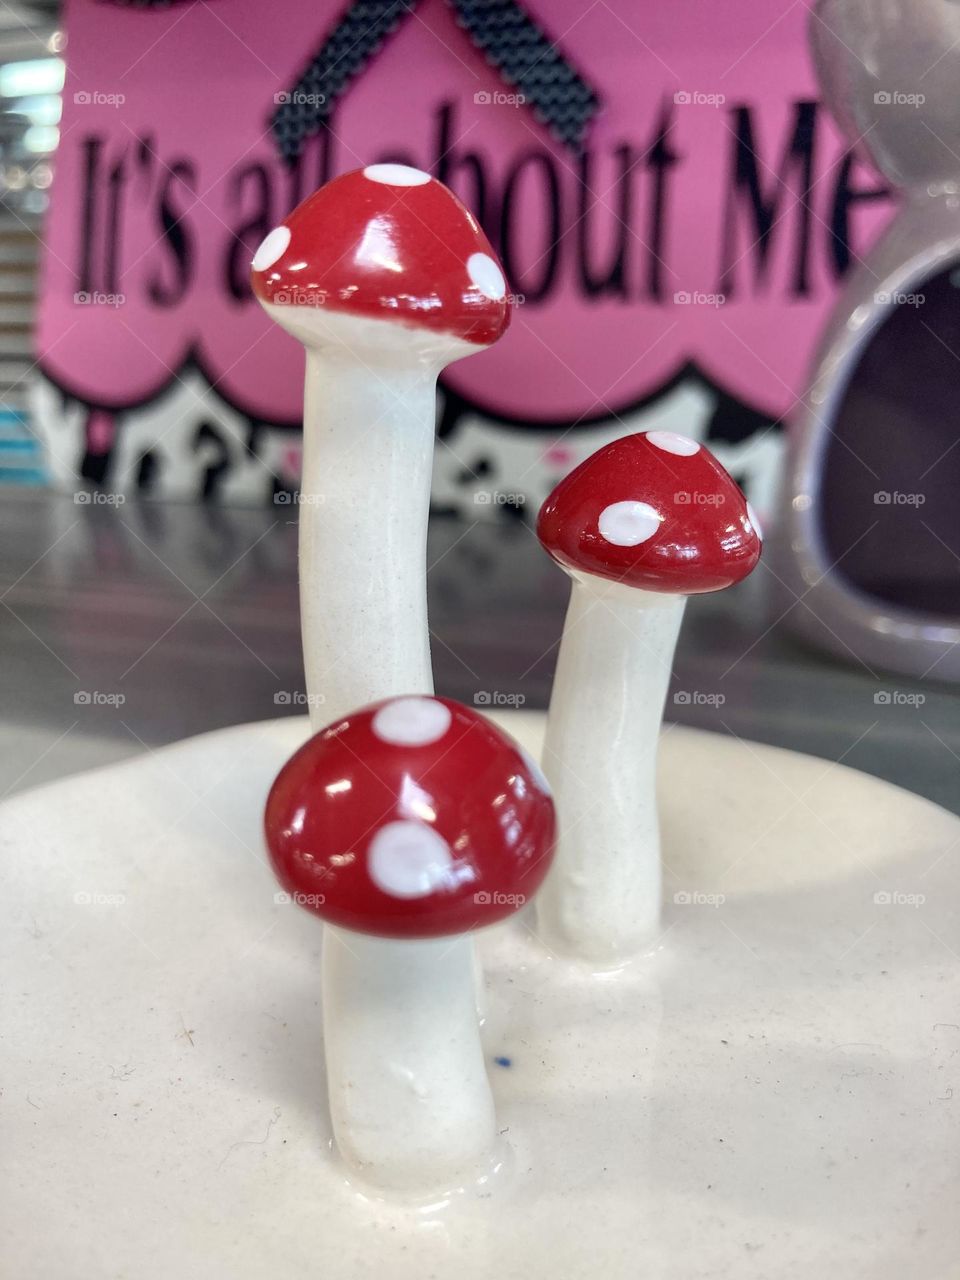 Mushroom ring holder 